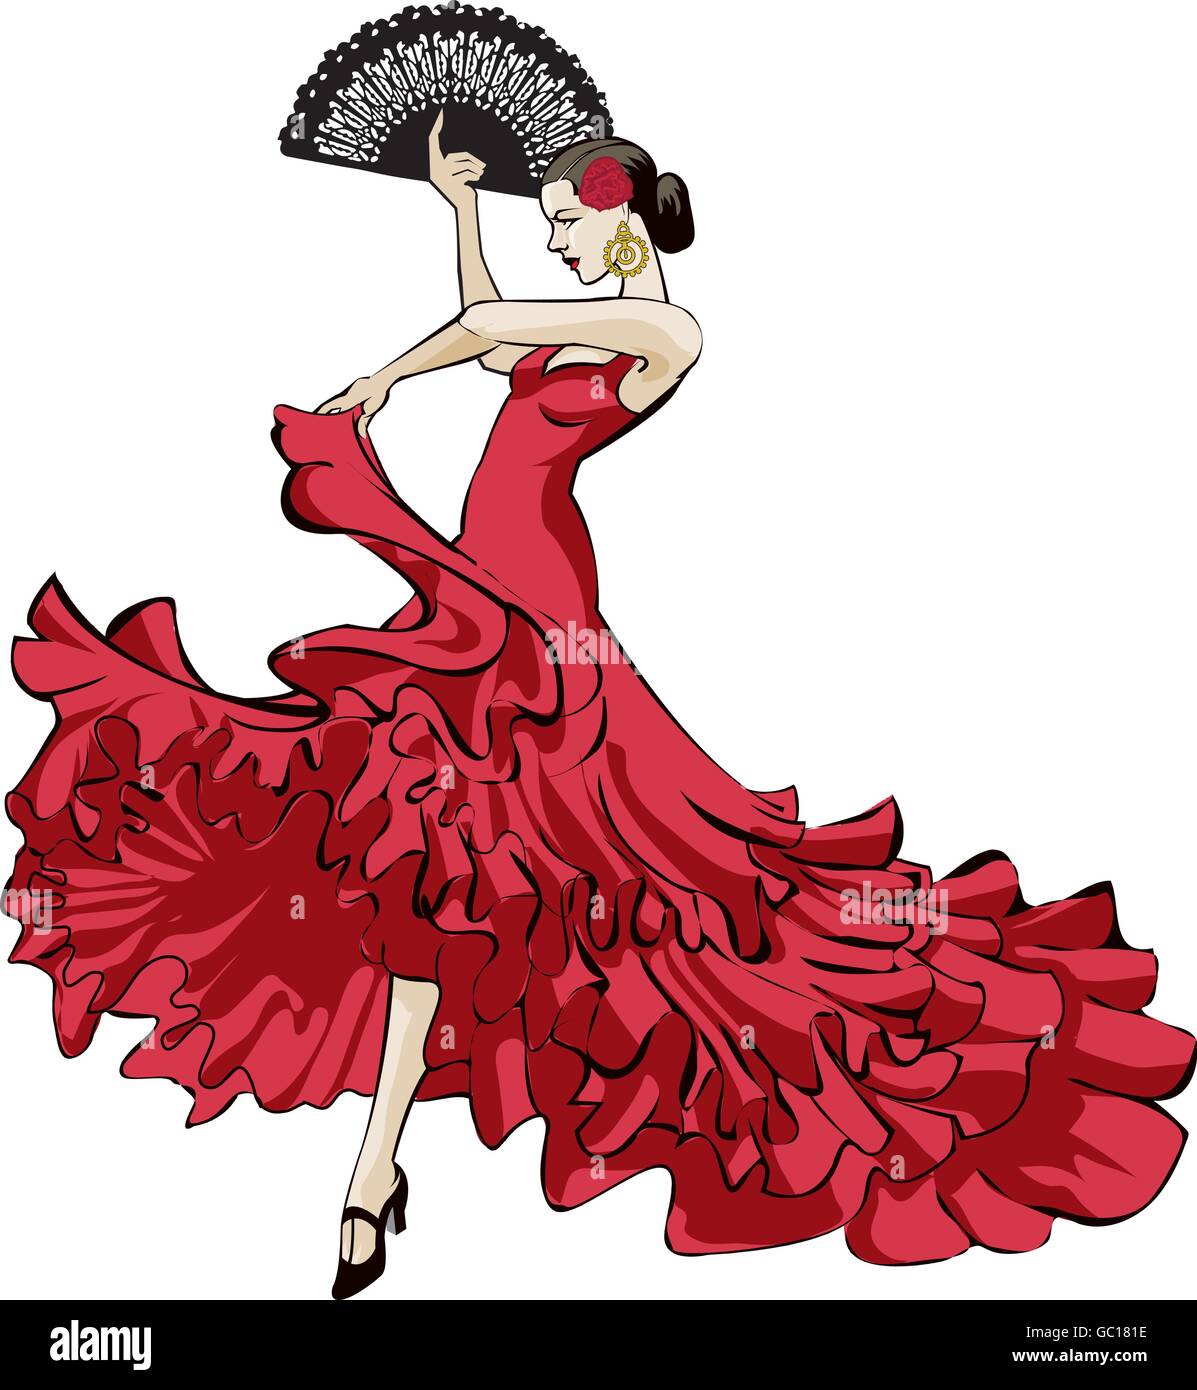 Vector illustration originale d'une danseuse de flamenco espagnol en robe rouge longue avec ventilateur en passionné de danse Illustration de Vecteur